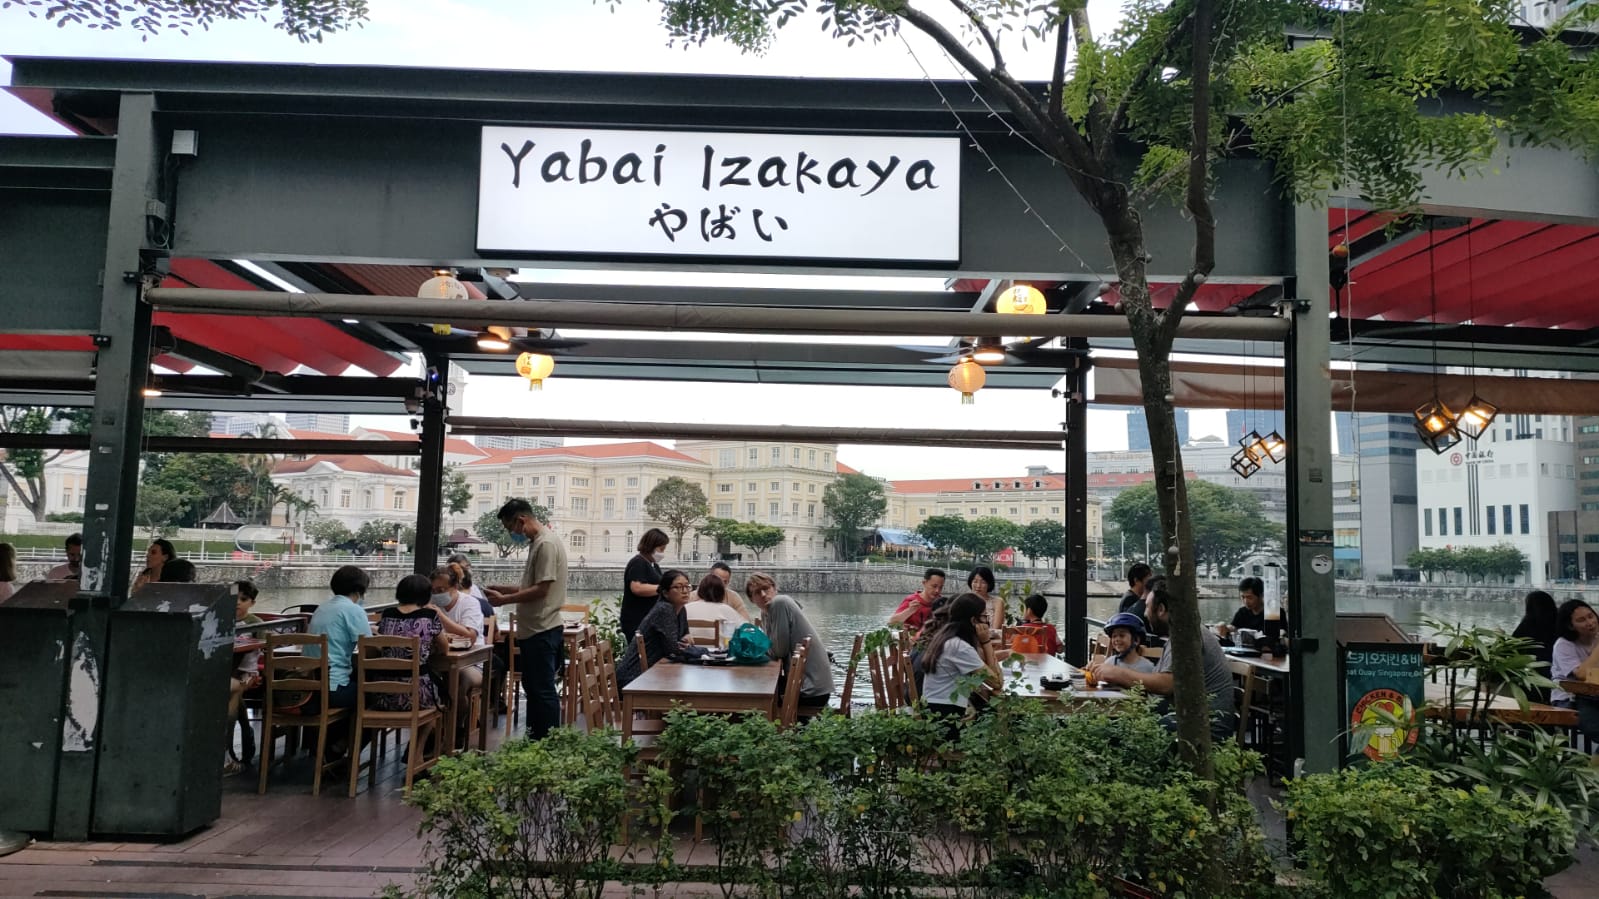 Yabai Izakaya, Japanese Food